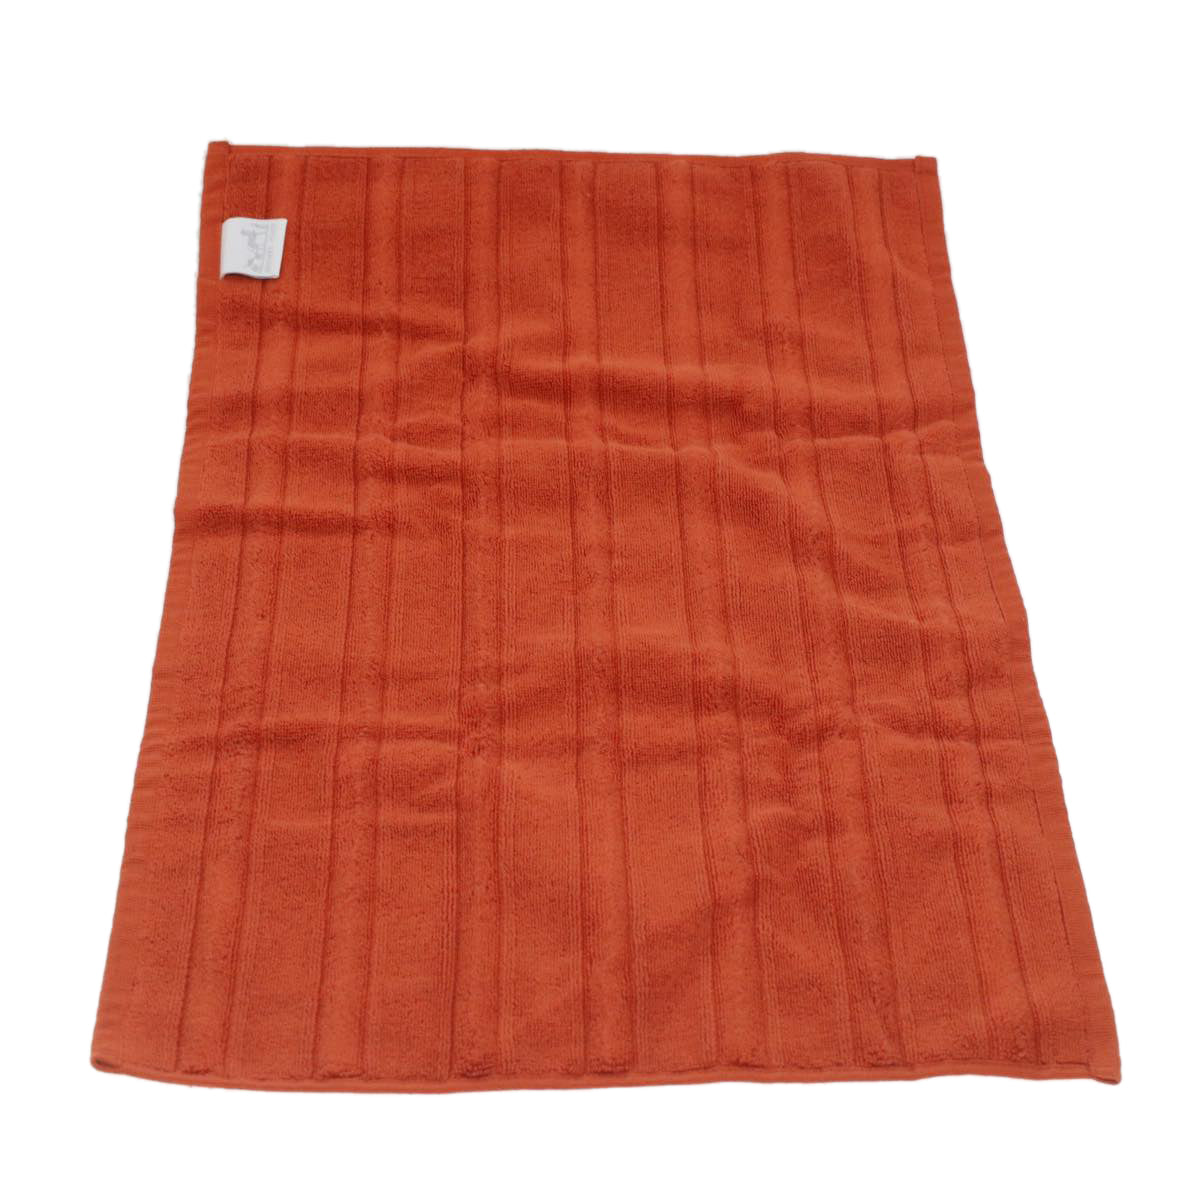 HERMES Towel cotton 2 pieces set Orange Auth 37844